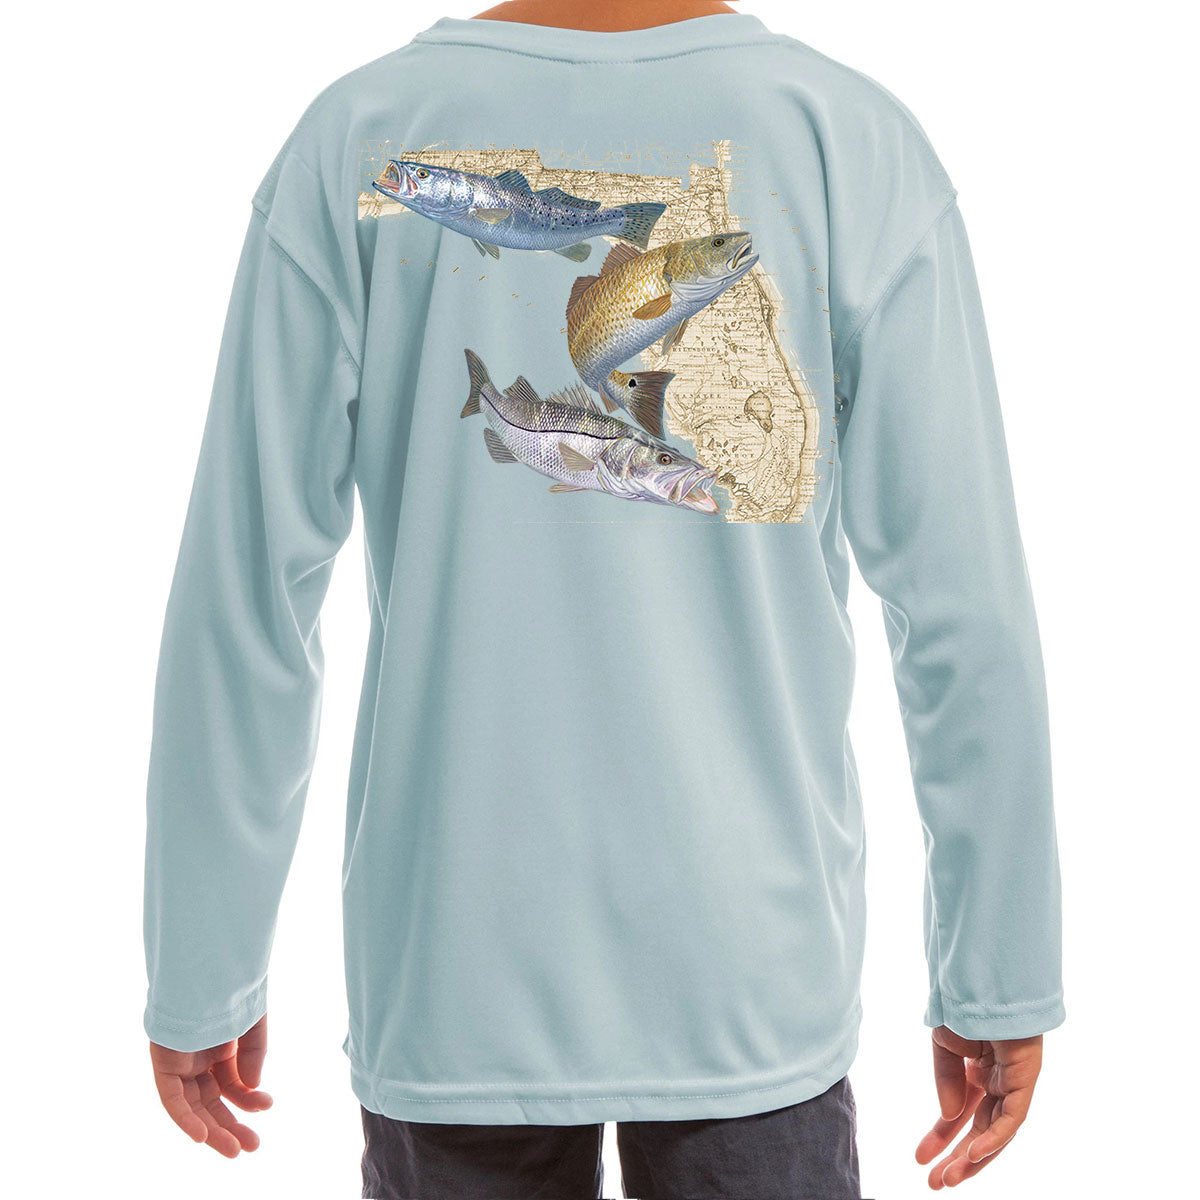 Camisas de pesca para jóvenes y niños: róbalo, gallineta nórdica y